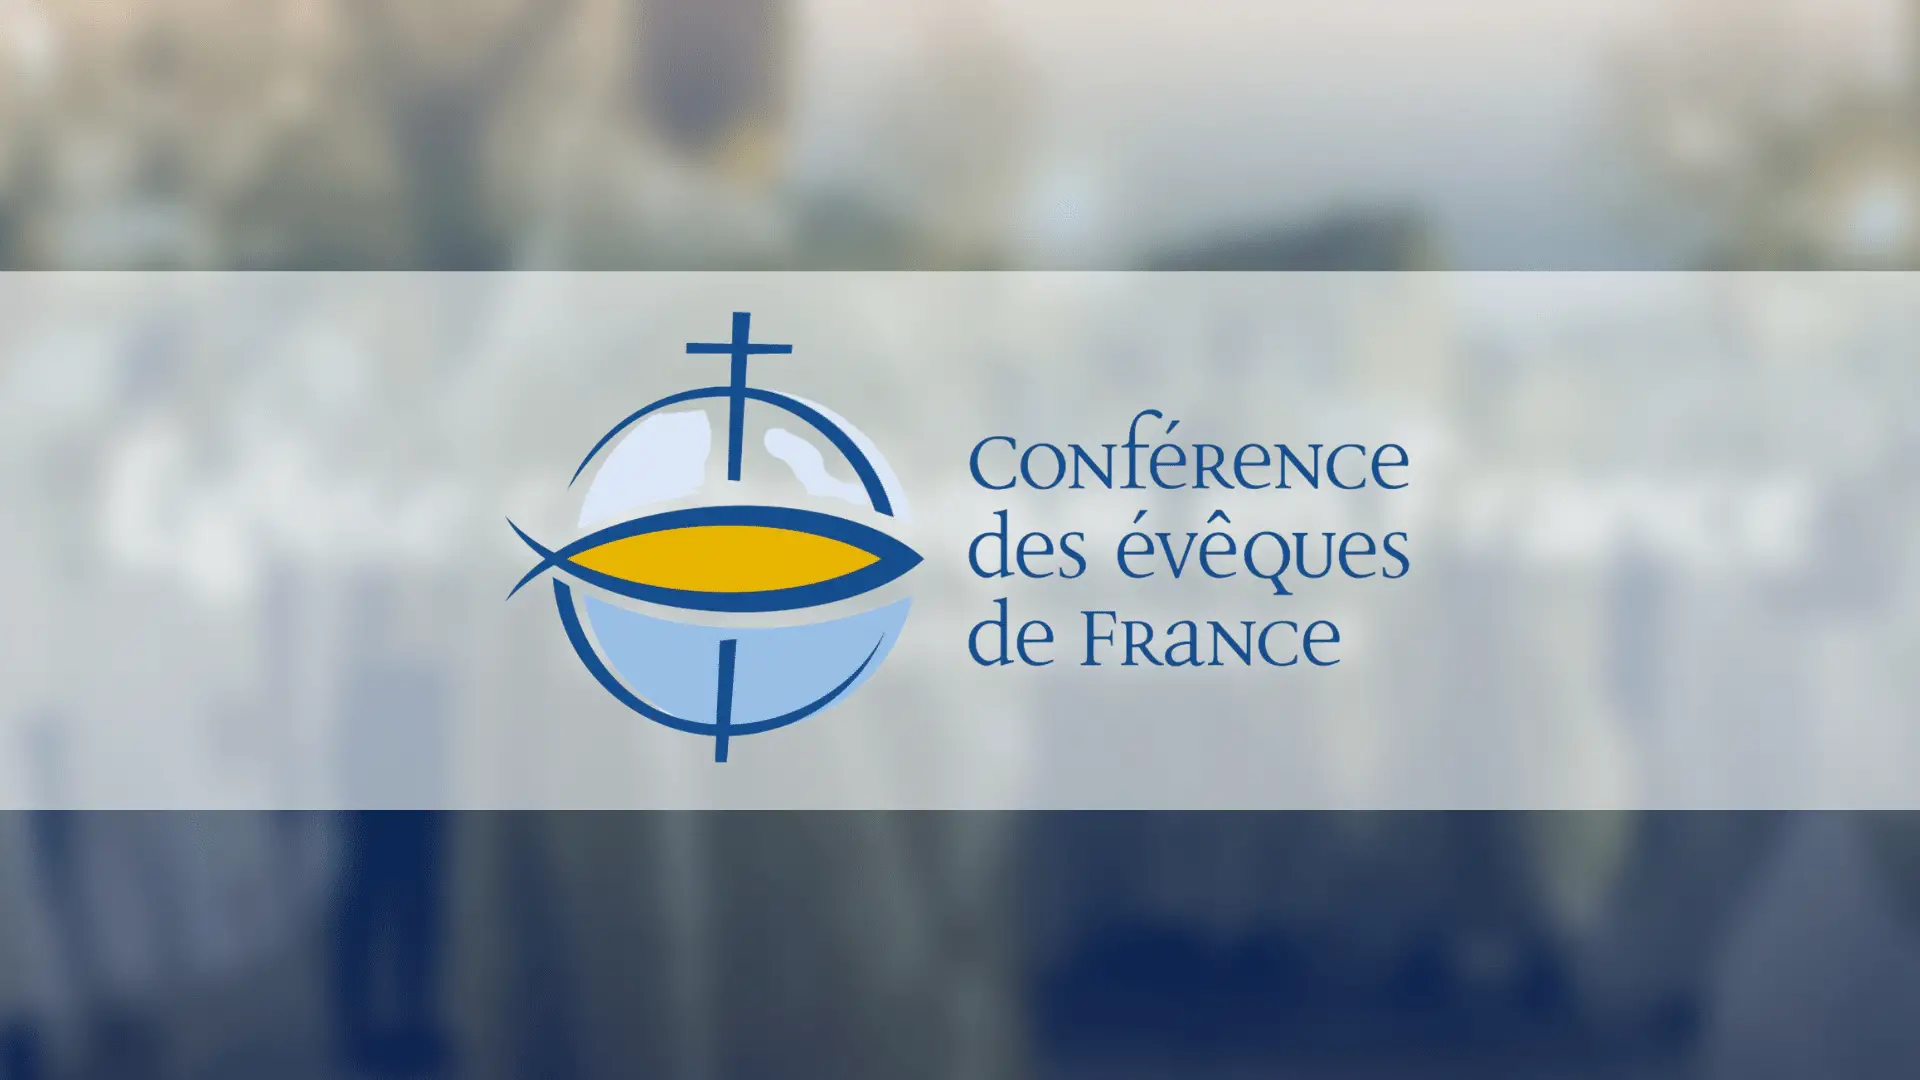 Les évêques et les religieux de France demandent aux ravisseurs de libérer les personnes enlevées